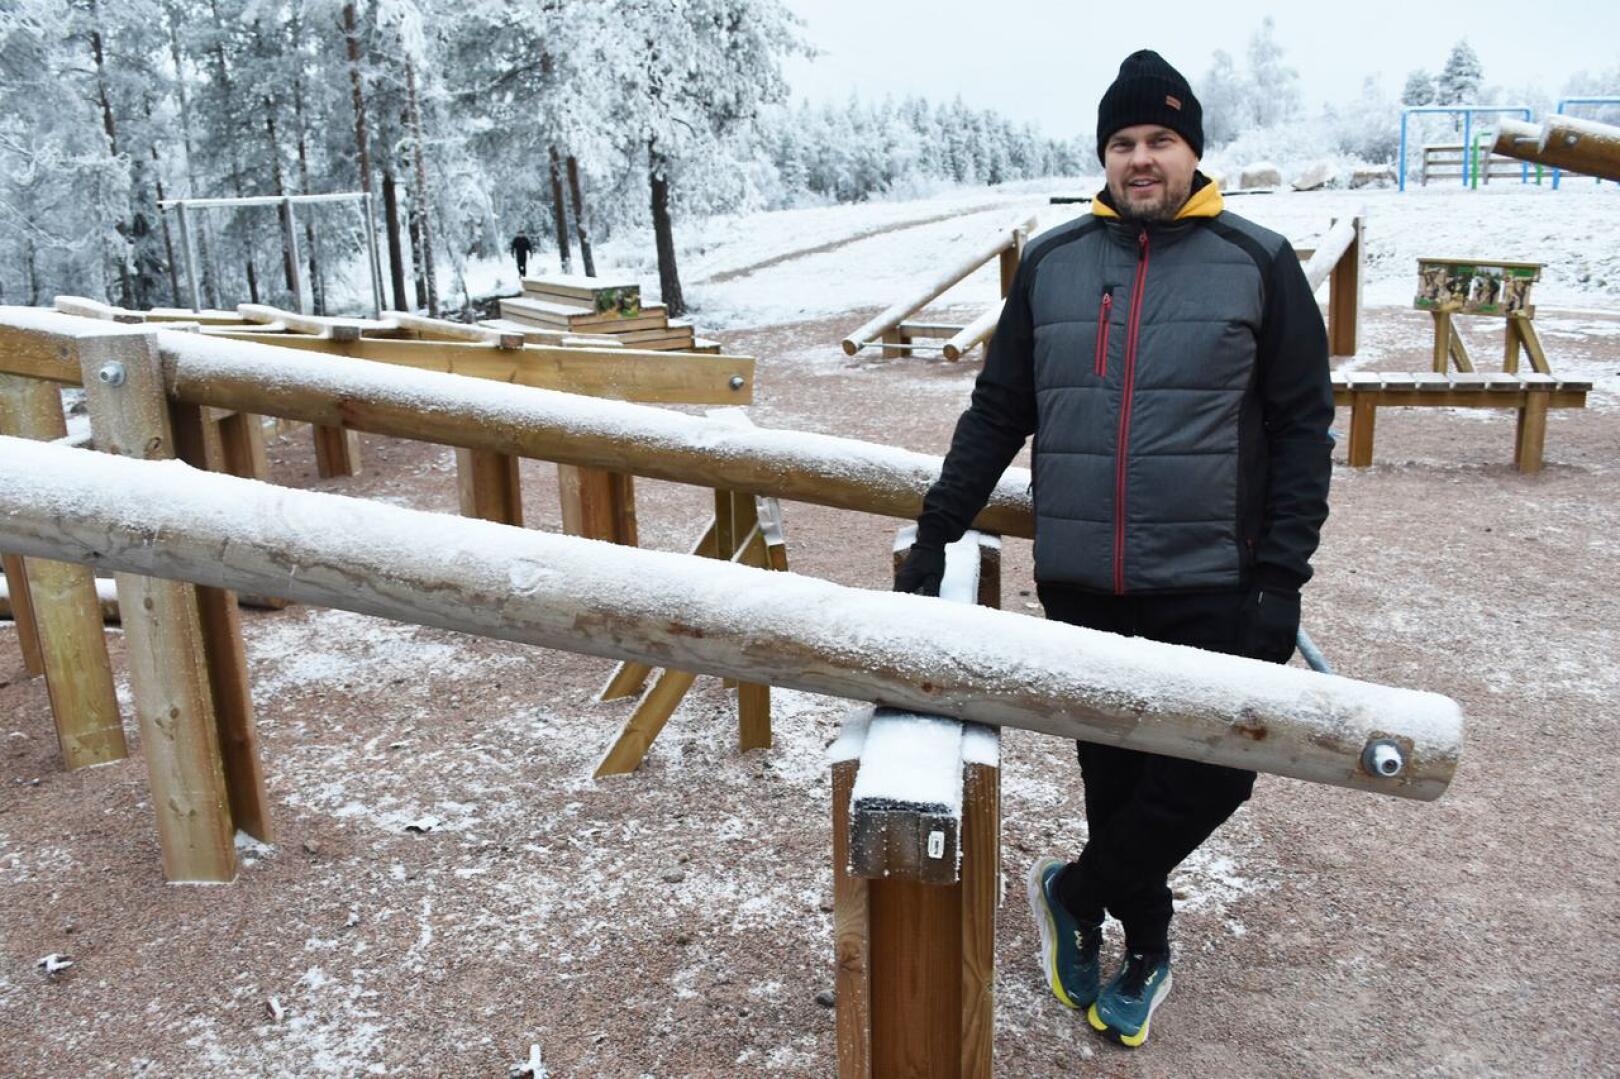 Lumimaan ulkokuntosali on HaU:n viimeisin iso projekti, jota Juha Aho on ollut vetämässä.